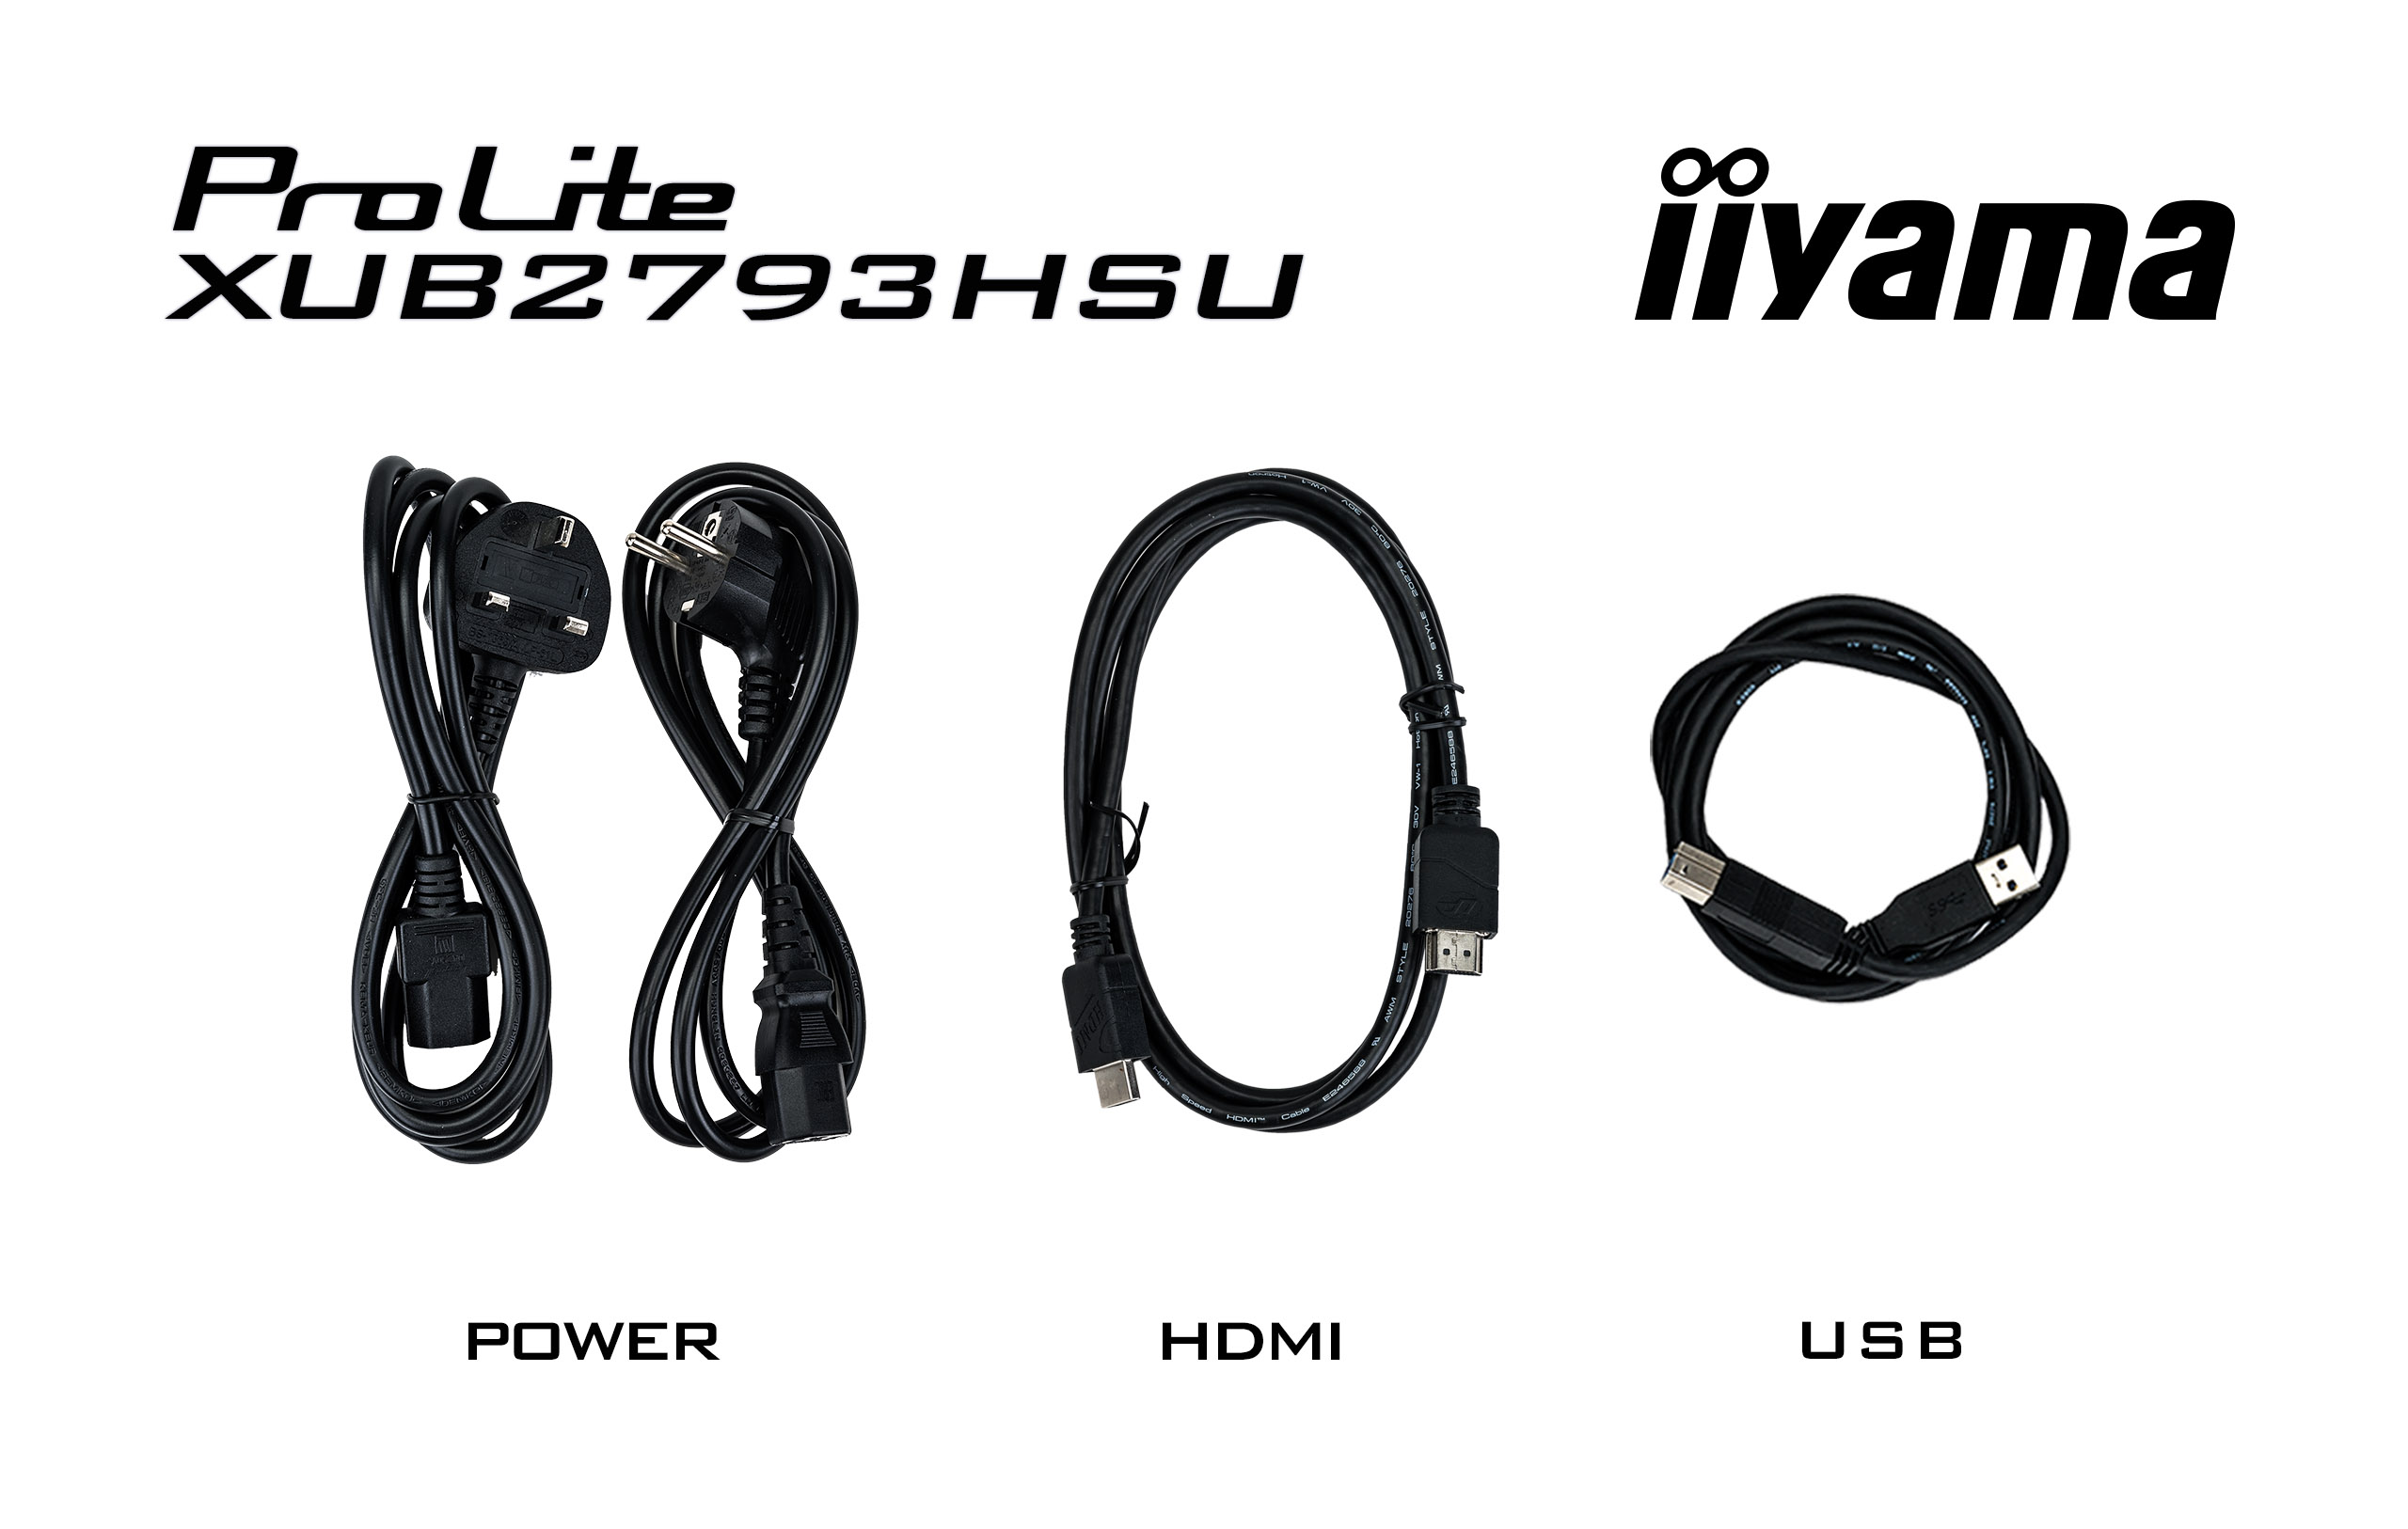 iiyama ProLite/ XUB2793HSU-B6/ 27"/ IPS/ FHD/ 100Hz/ 1ms/ Black/ 3R 